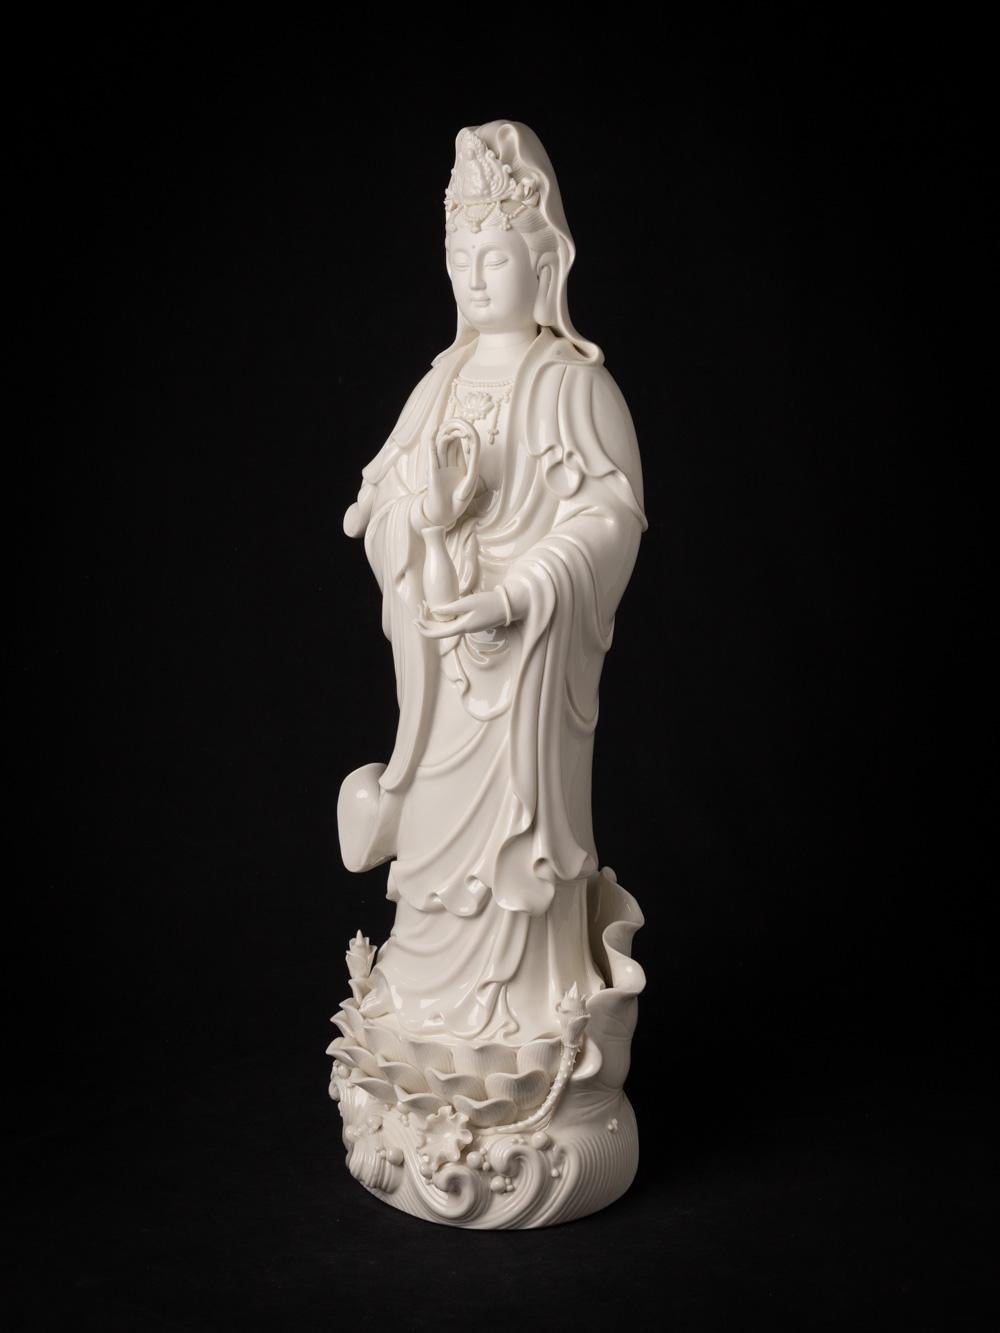 La statue de Guan Yin en porcelaine, très belle et détaillée, est une œuvre d'art exquise originaire de Chine. Fabriquée en porcelaine Dehua de la plus haute qualité, cette statue se dresse à une hauteur élégante de 65,5 cm et mesure 22,5 cm de